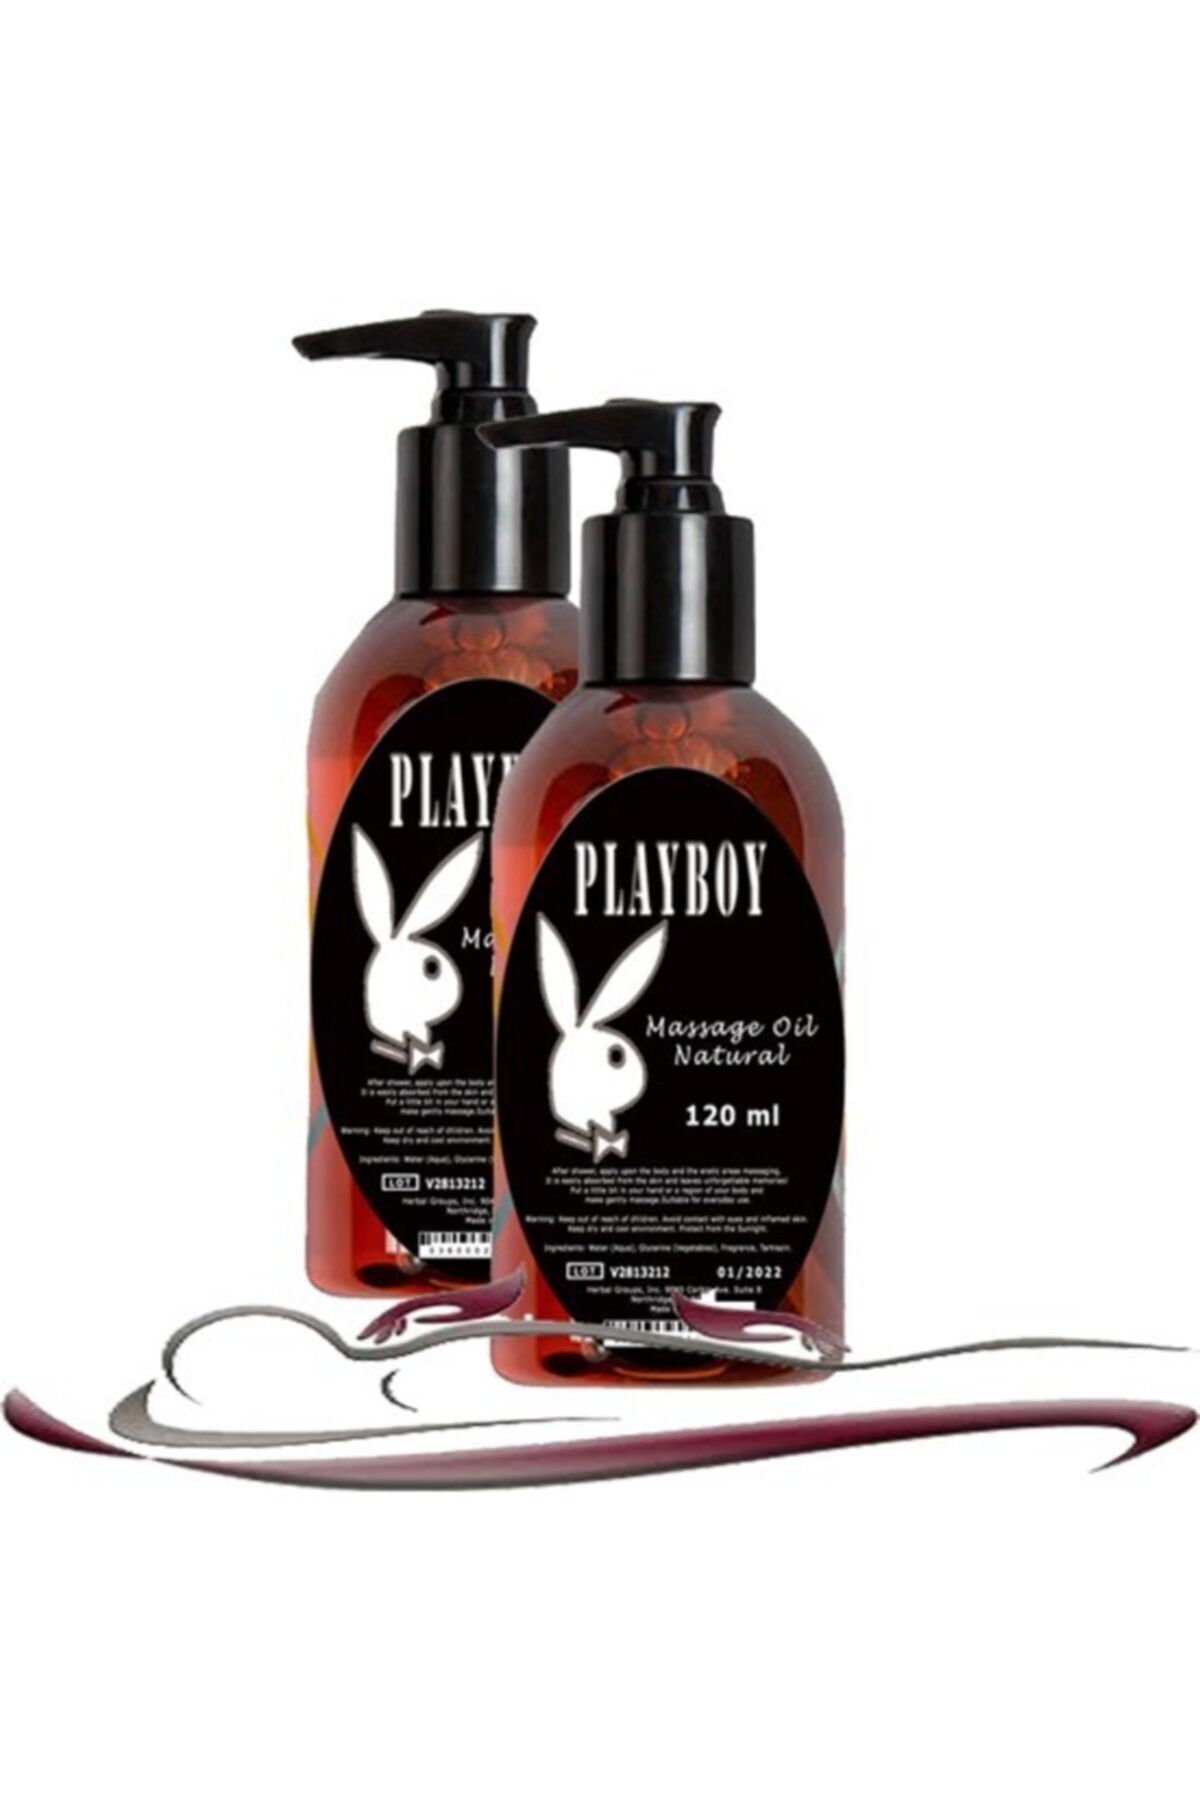 Playboy Natural Erkek Istek Arttırıcı Rahatlatıcılı Vücut Masaj 120 Ml 2 Adet